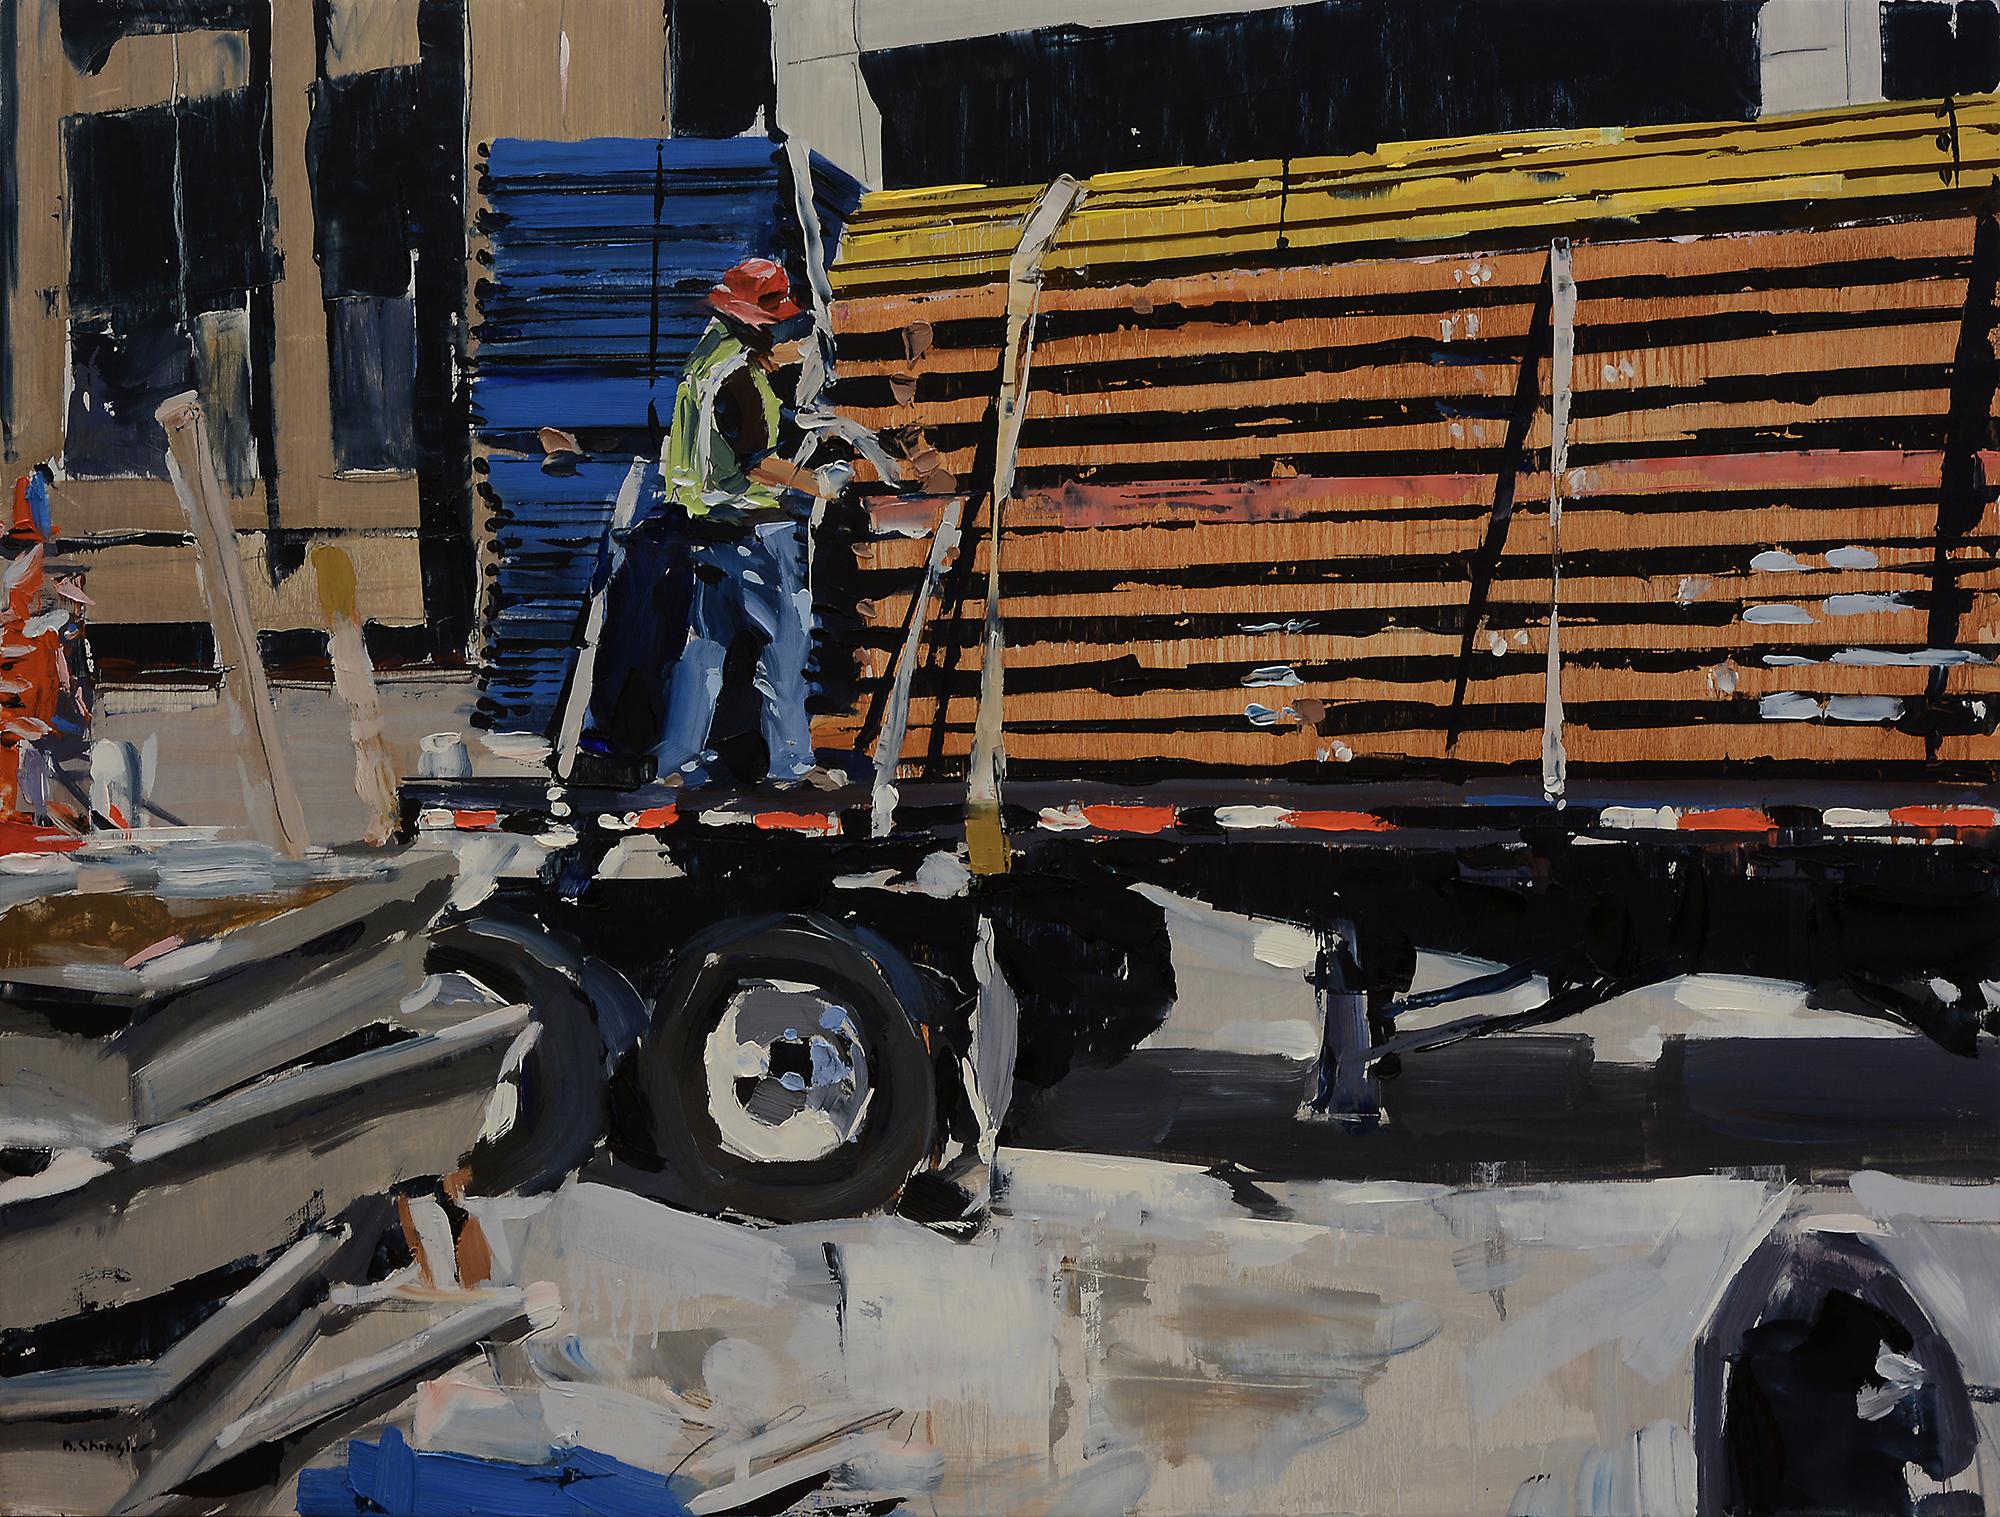 Landscape Painting David Shingler - Peinture à l'huile « Man on Truck » (homme sur camion)